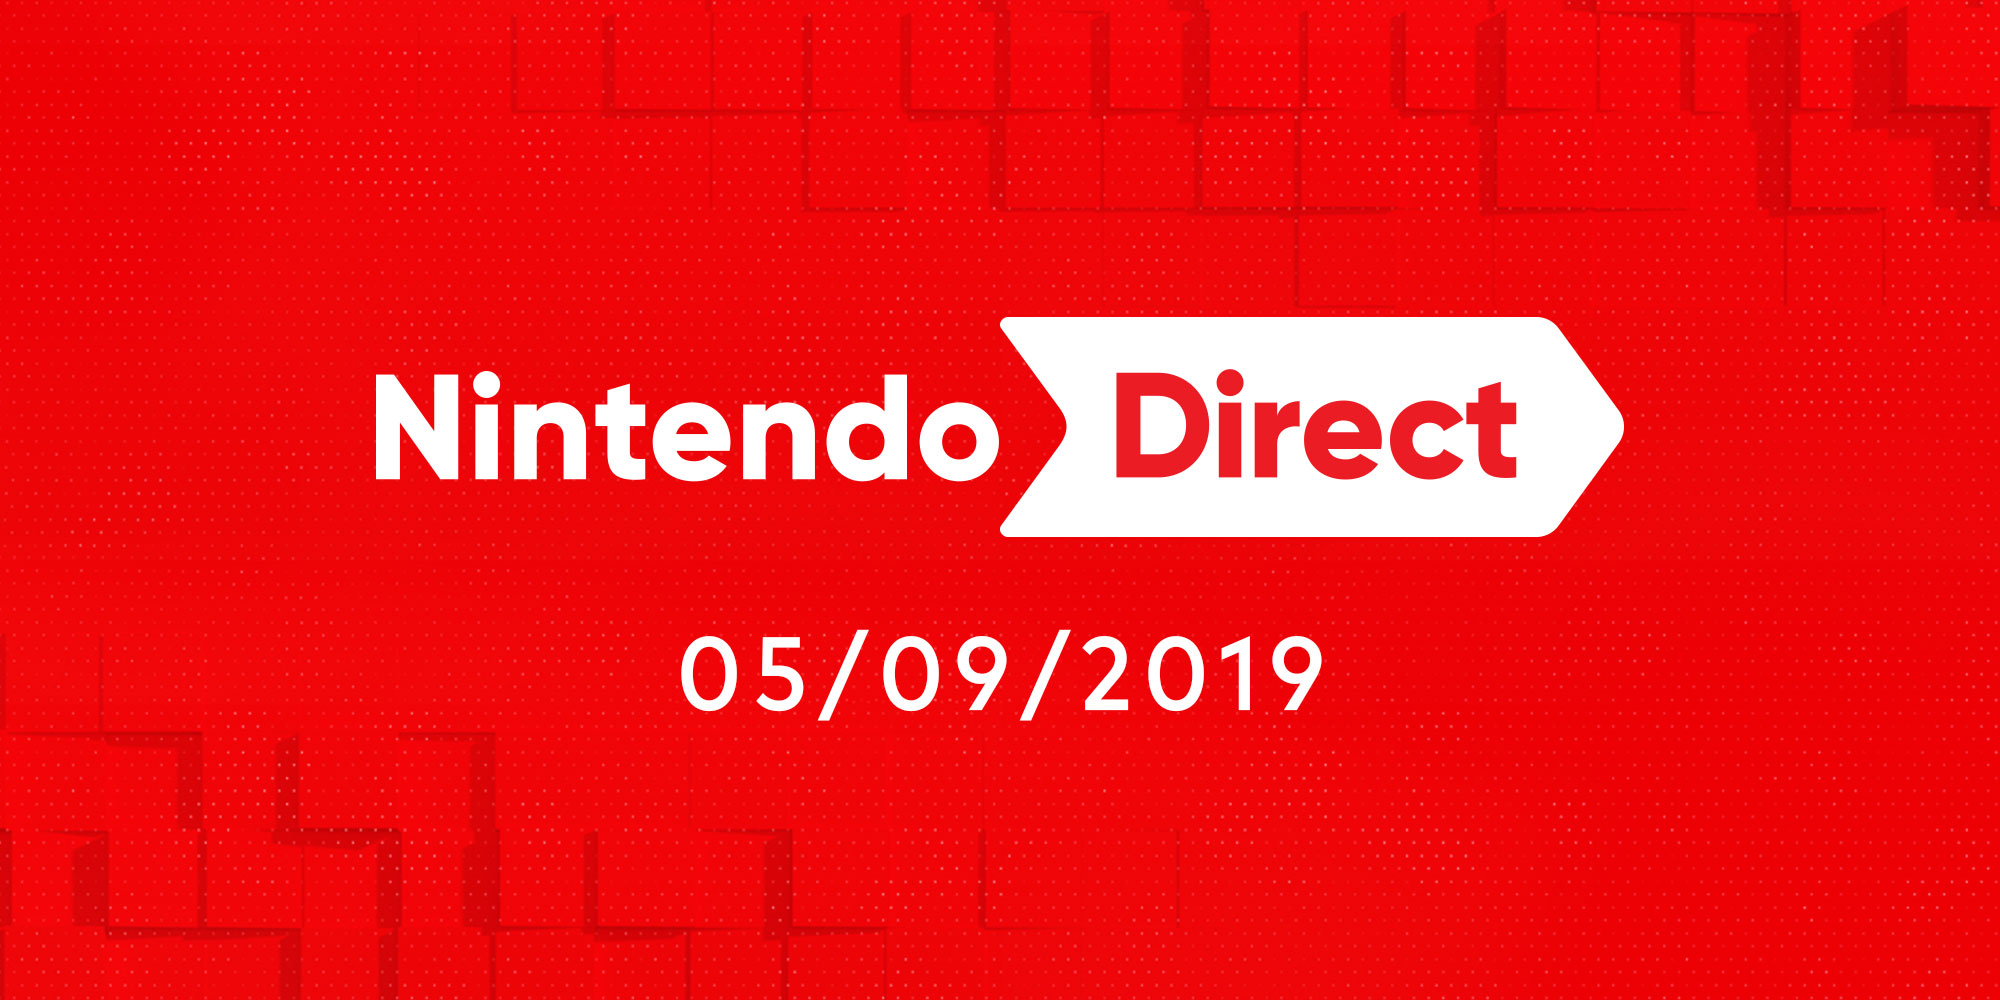 Nintendo annuncia l'arrivo di Xenoblade Chronicles: Definitive Edition, Overwatch Legendary Edition e molto altro su Nintendo Switch con un nuovo Nintendo Direct!